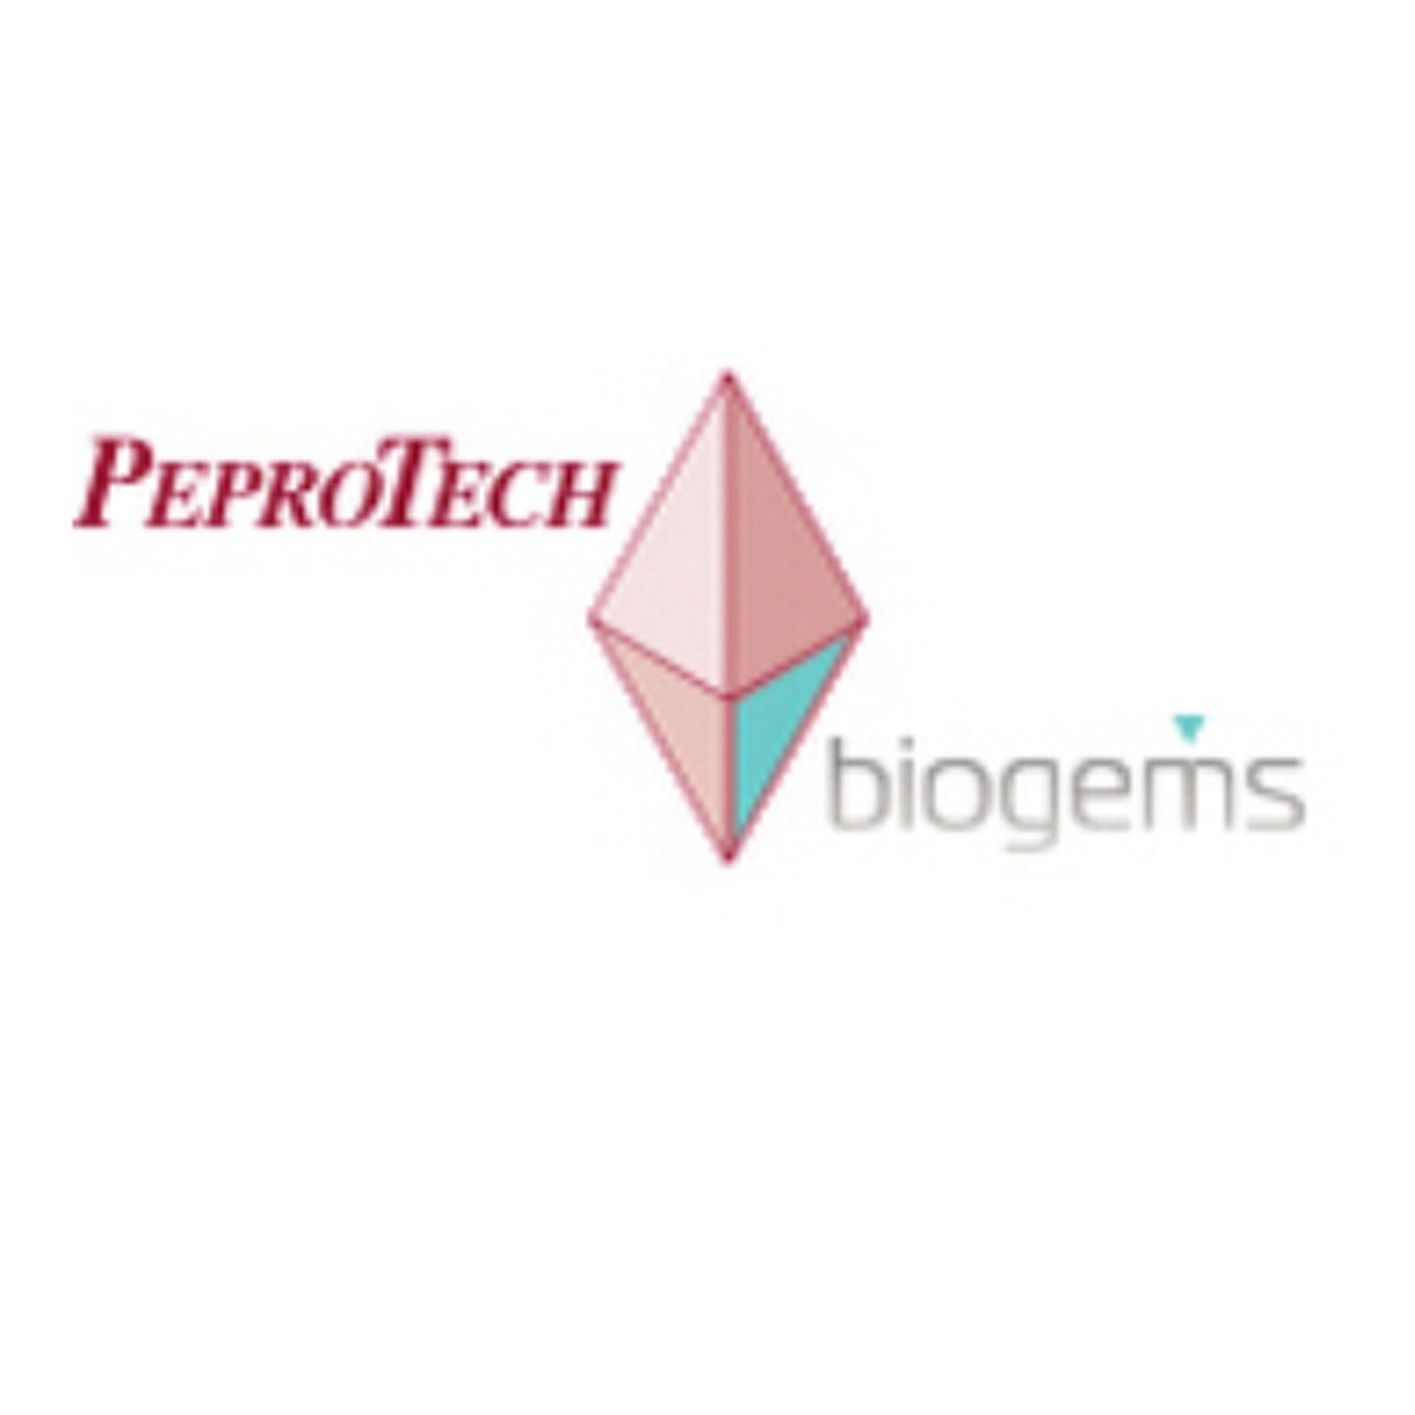 Peprotech(Biogems) 2354843-100mg 8-Bromo-cAMP